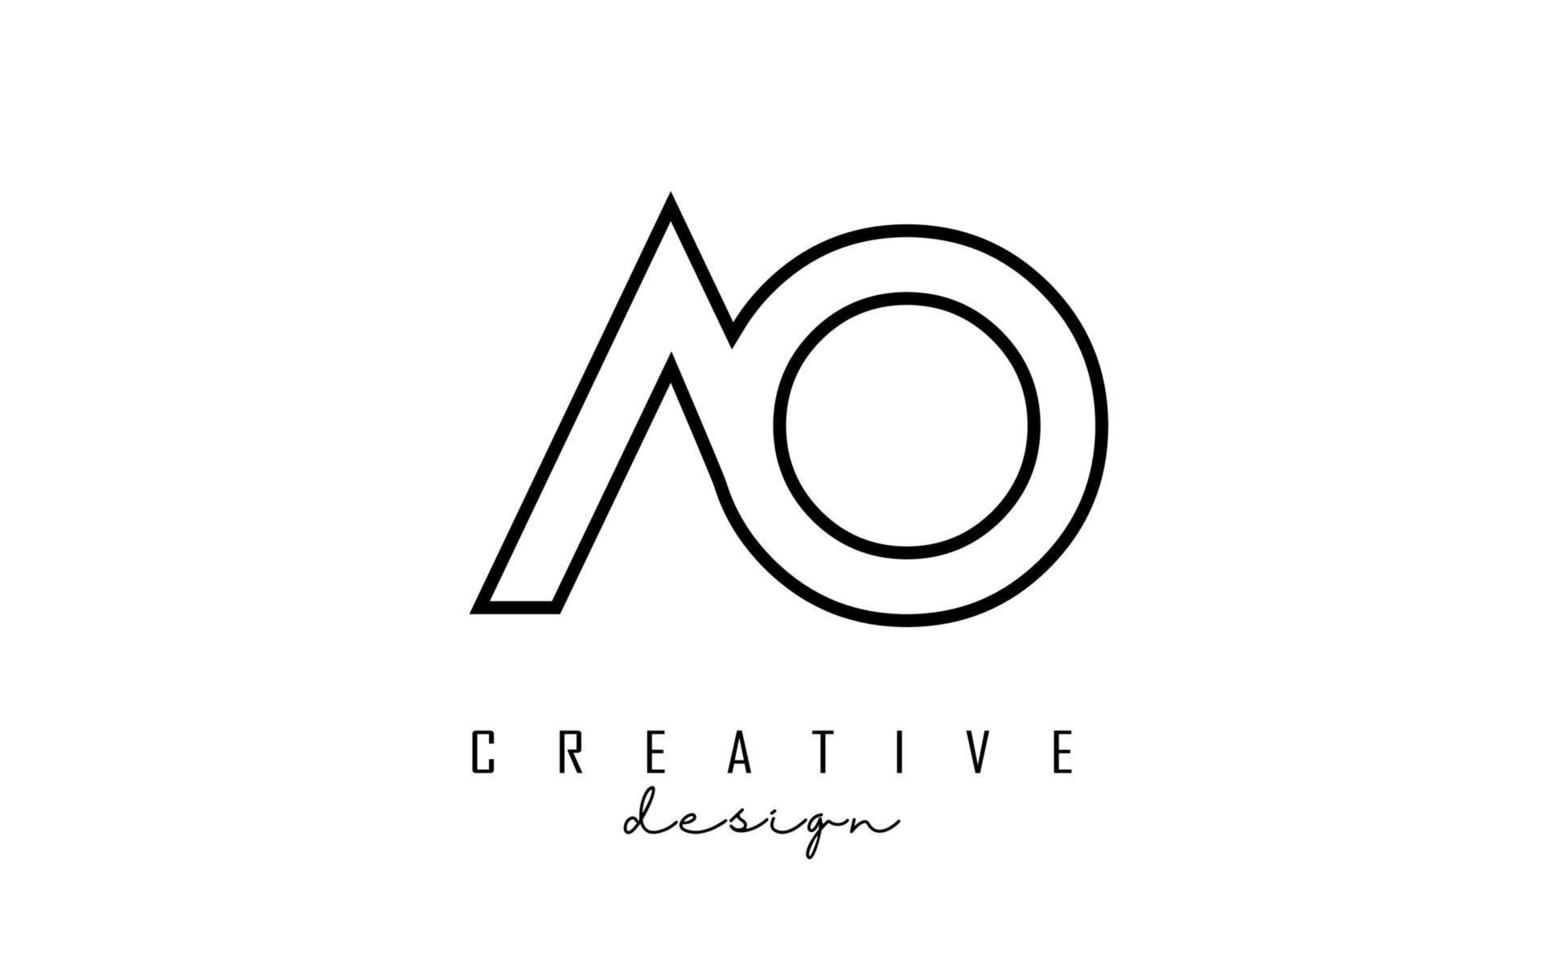 Umriss AO Letters Logo mit minimalistischem Design. geometrisches Buchstabenlogo. vektor